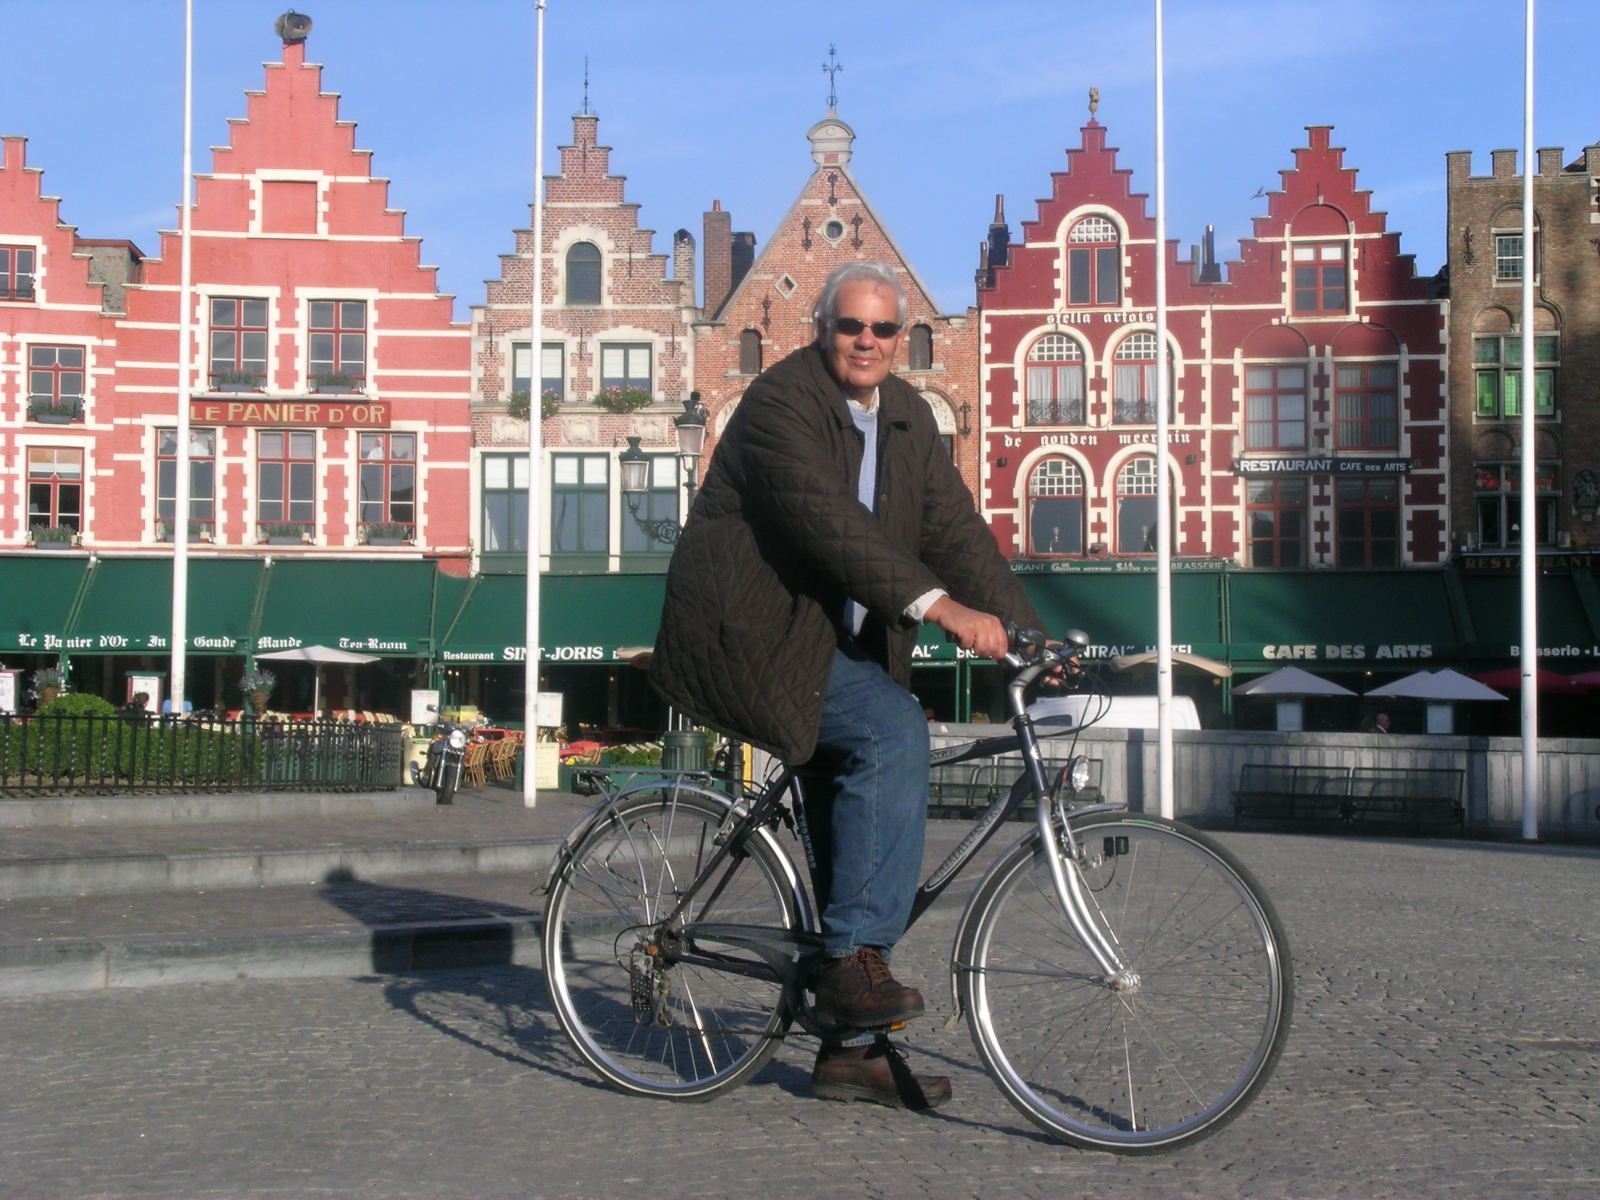 Brugge: November 2005